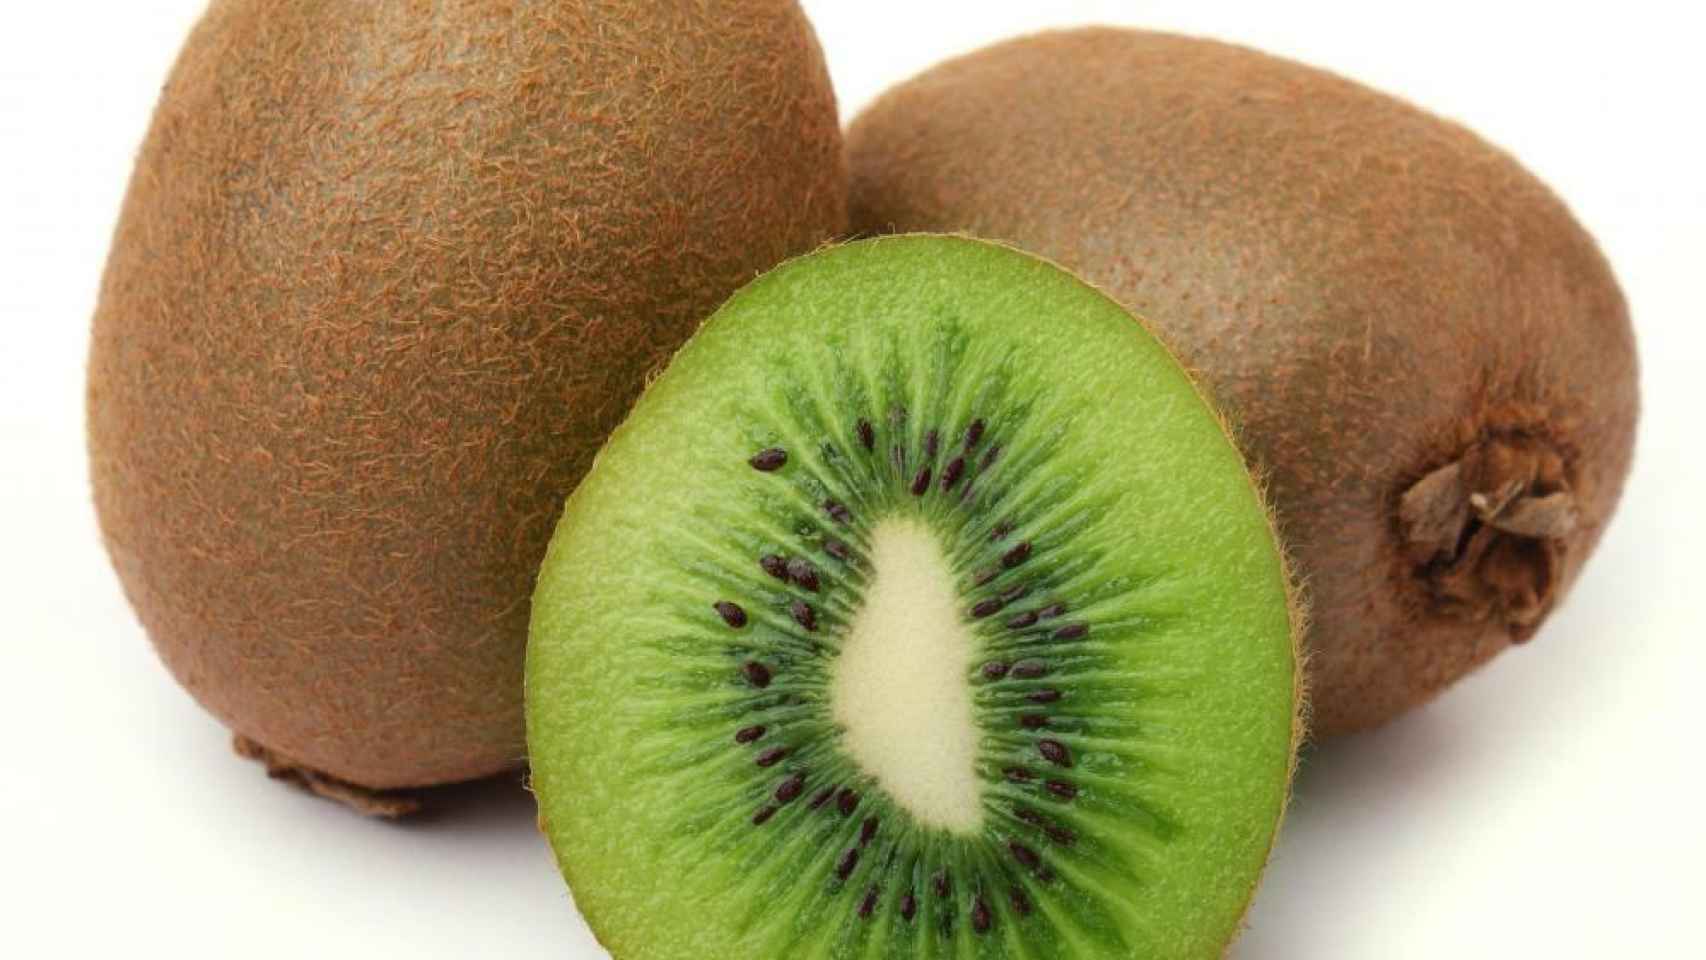 Beneficios del kiwi, una fruta rica en antioxidantes